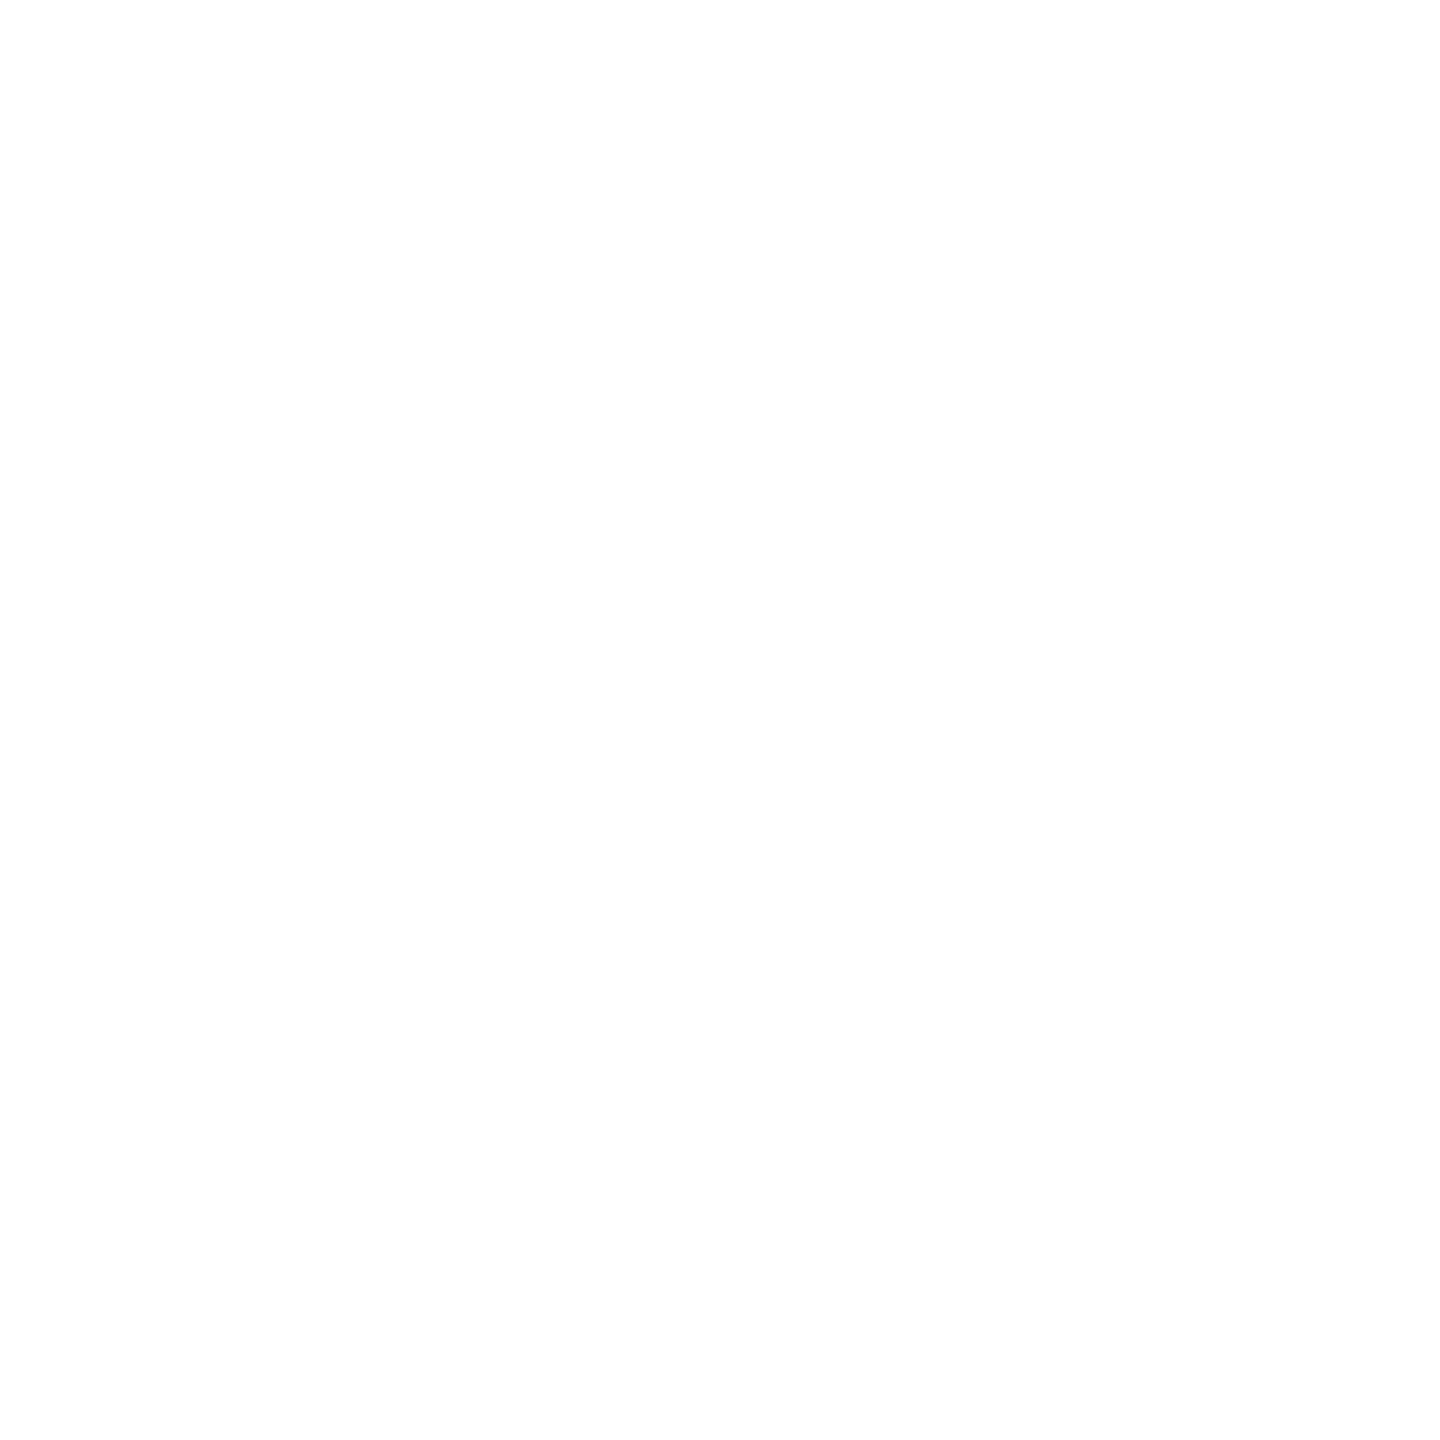 H-D Napoli Web-Emblem